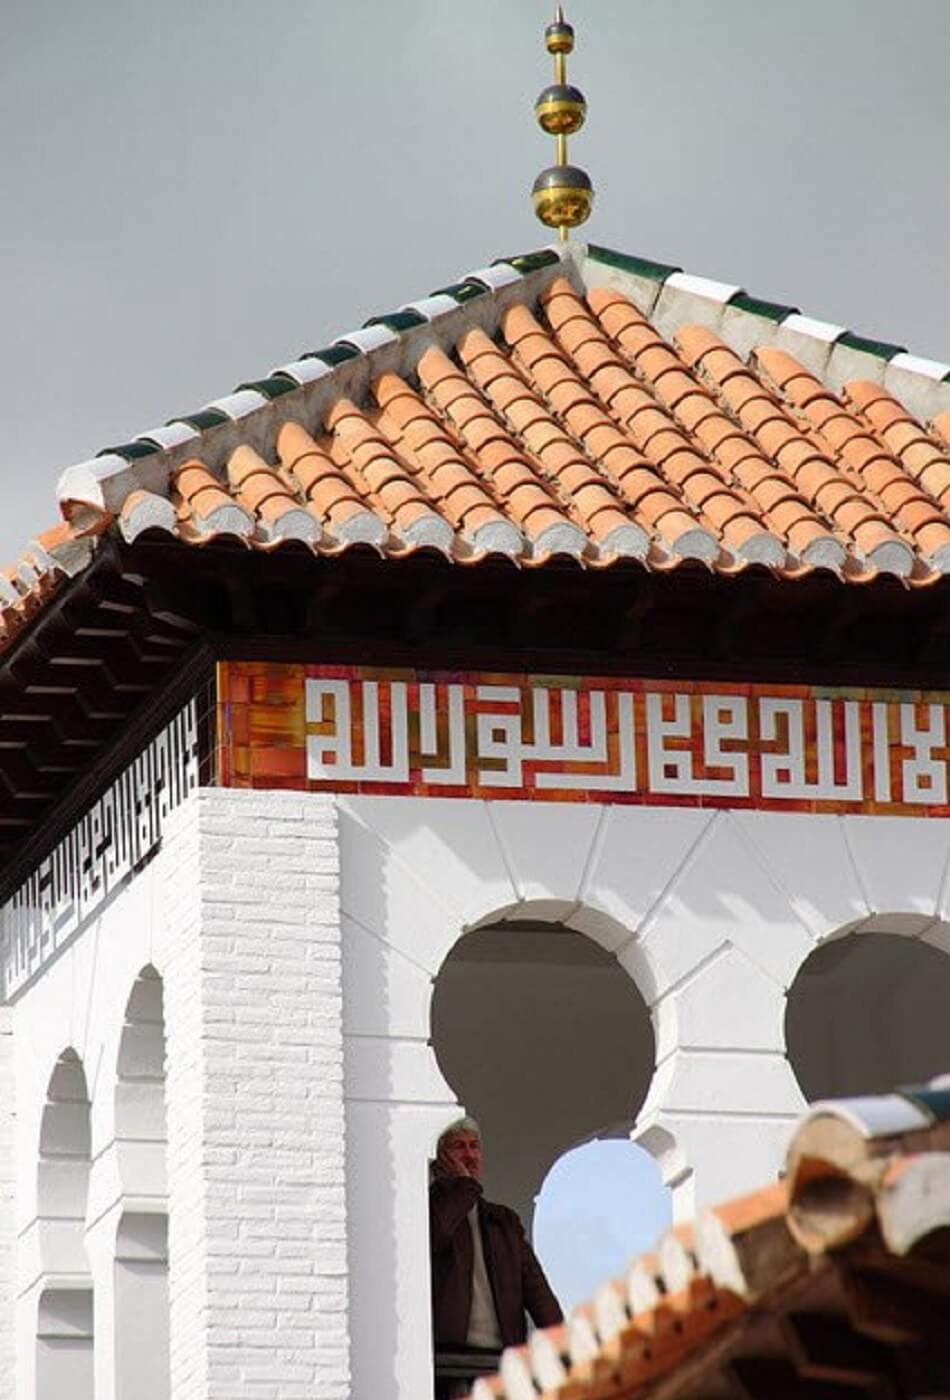 أول مسجد بُني في غرناطة منذ سقوطها قبل أكثر من 5 قرون! (بالصور)